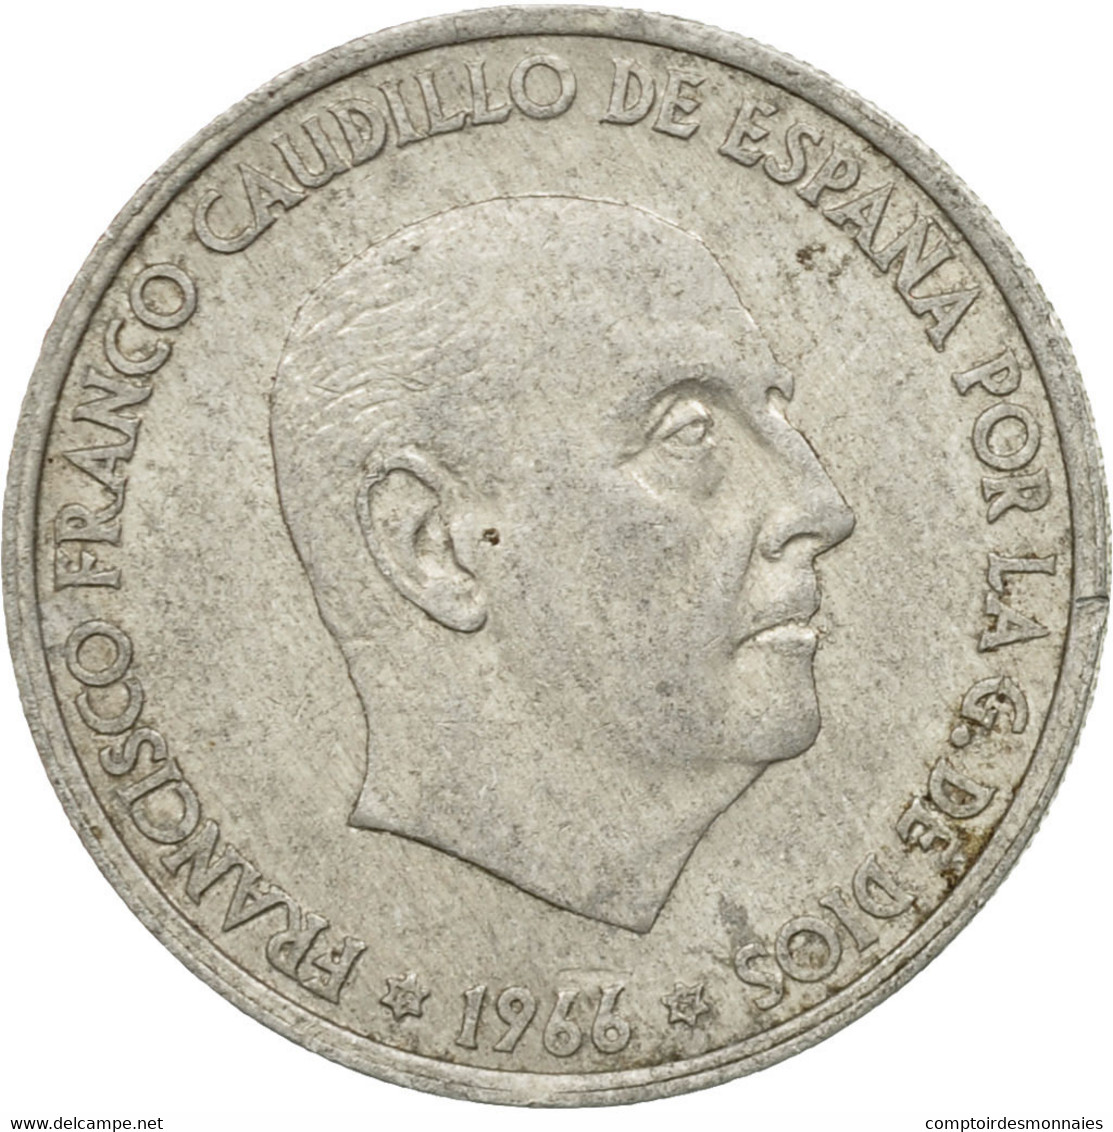 Monnaie, Espagne, Francisco Franco, Caudillo, 50 Centimos, 1967, TTB, Aluminium - 50 Centesimi